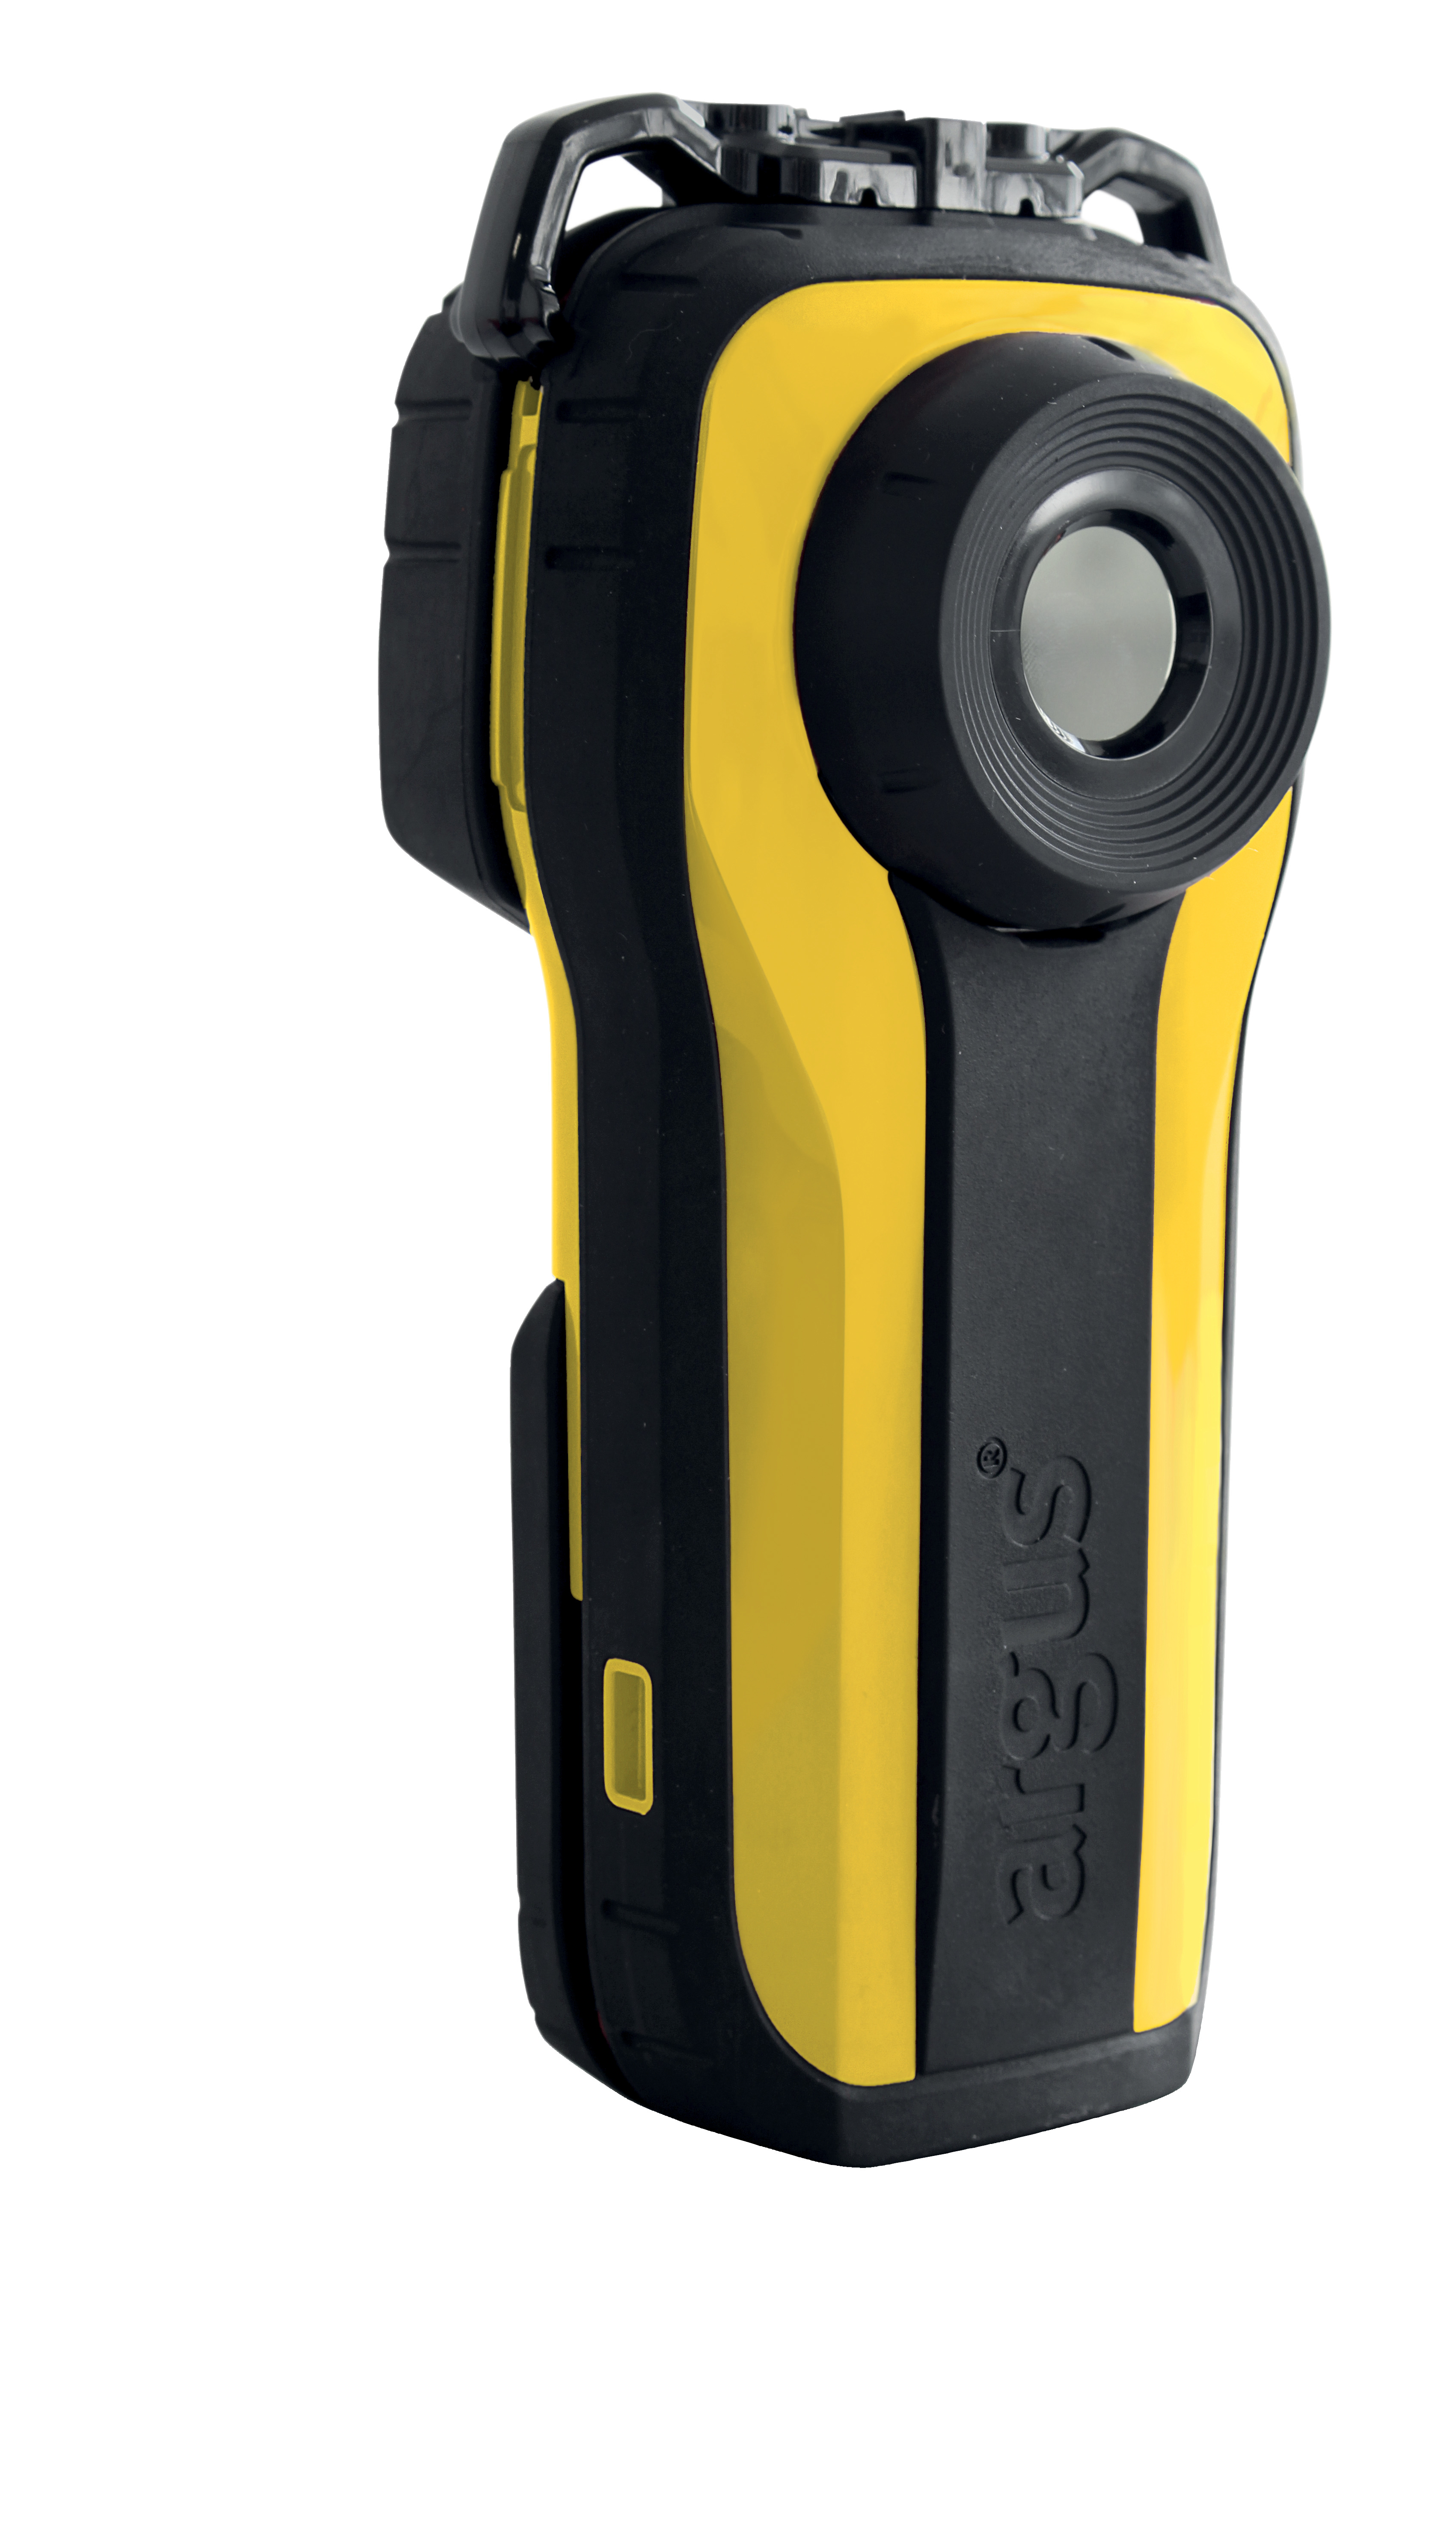 Wärmebildkamera ARGUS Mi-TIC -E1-, 2,7 Zoll Display mit Einknopfbedienung, 320x240 Pixel - kleinste, hochauflösende Kamera für den Feuerwehr-Einsatz. Extrem leicht: ca. 765 g - extrem klein: paßt in jede Tasche / so groß wie eine ADALIT Lampe. BxHxT